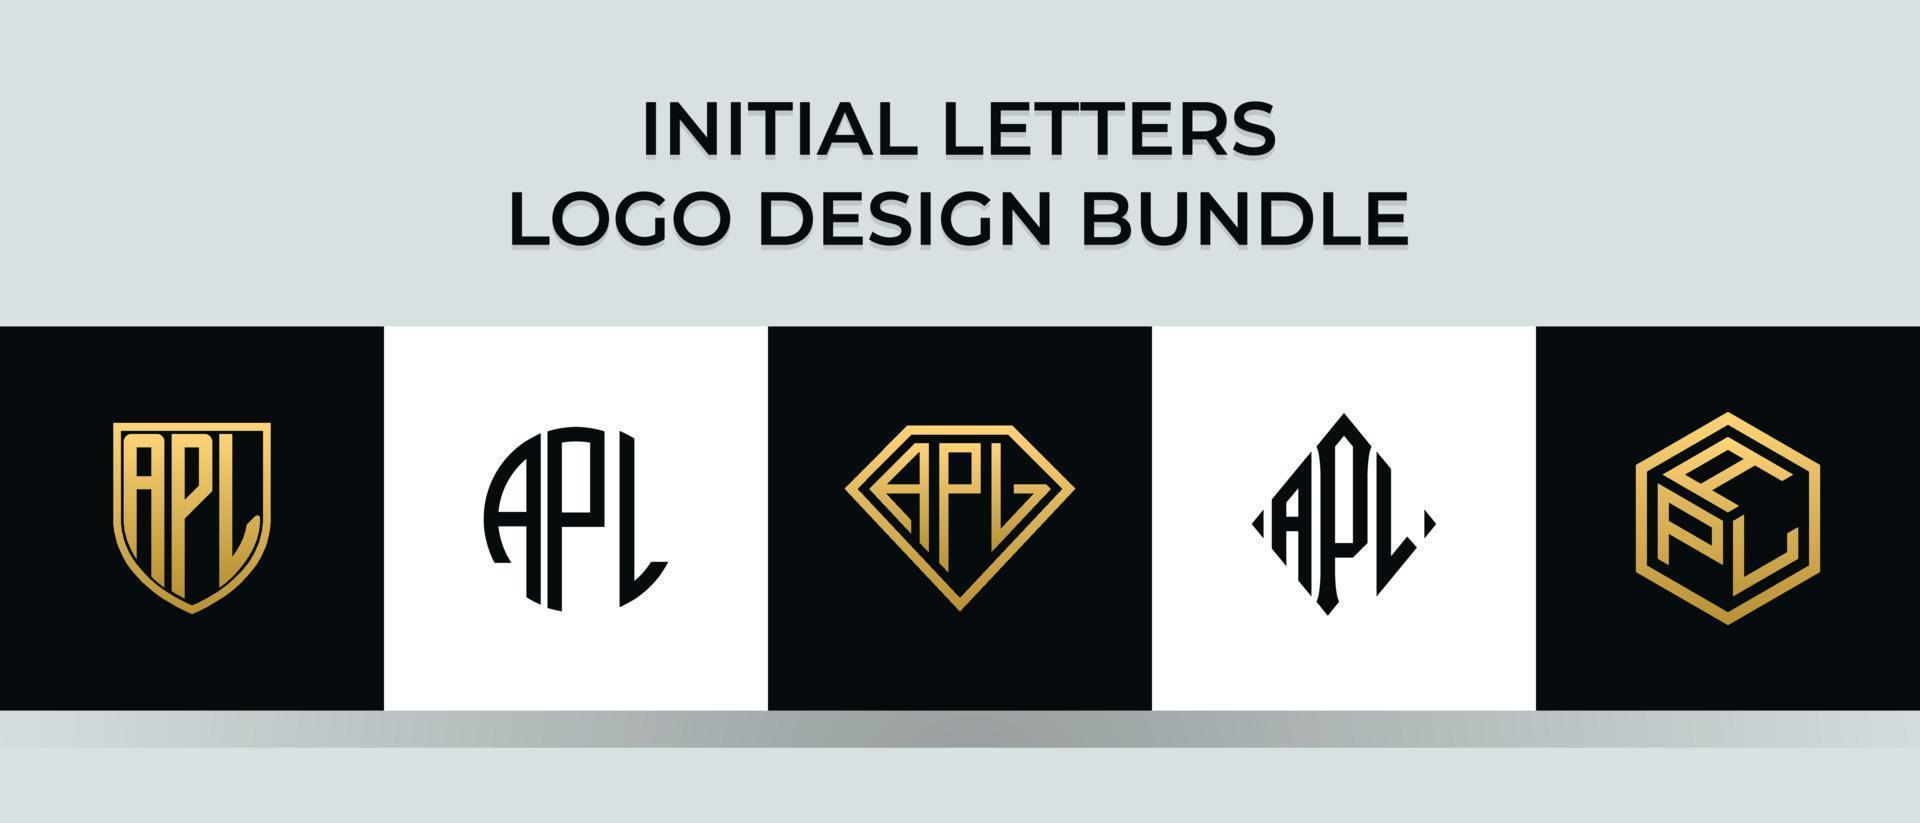 Anfangsbuchstaben apl Logo Designs Bundle vektor